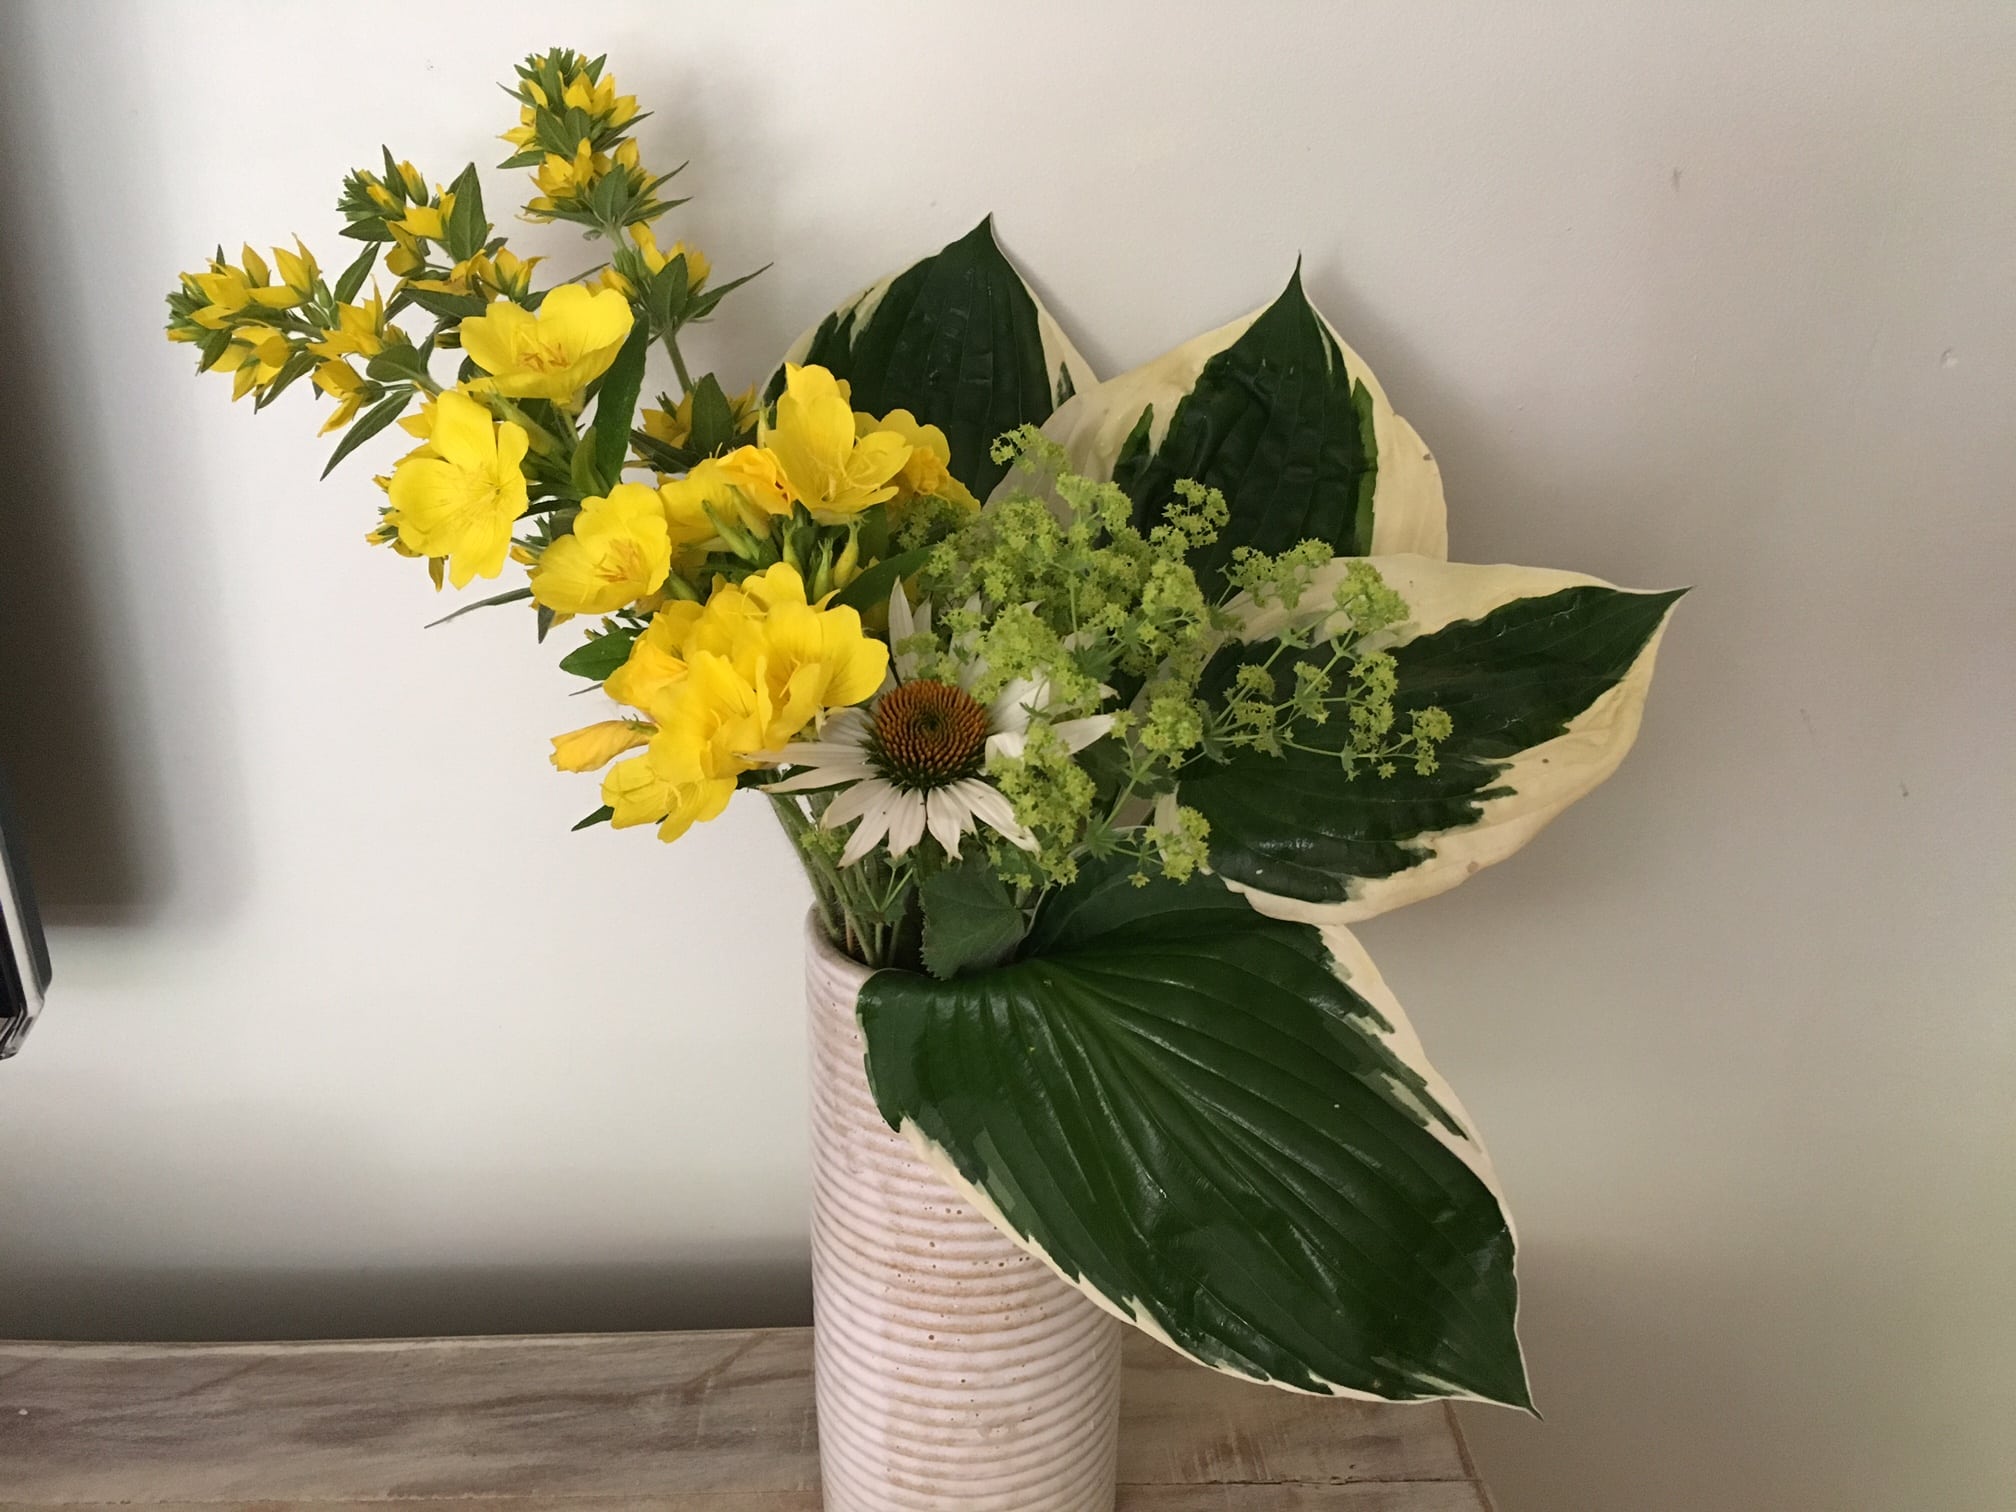 Flower arrangement, Wellesley, June 2016